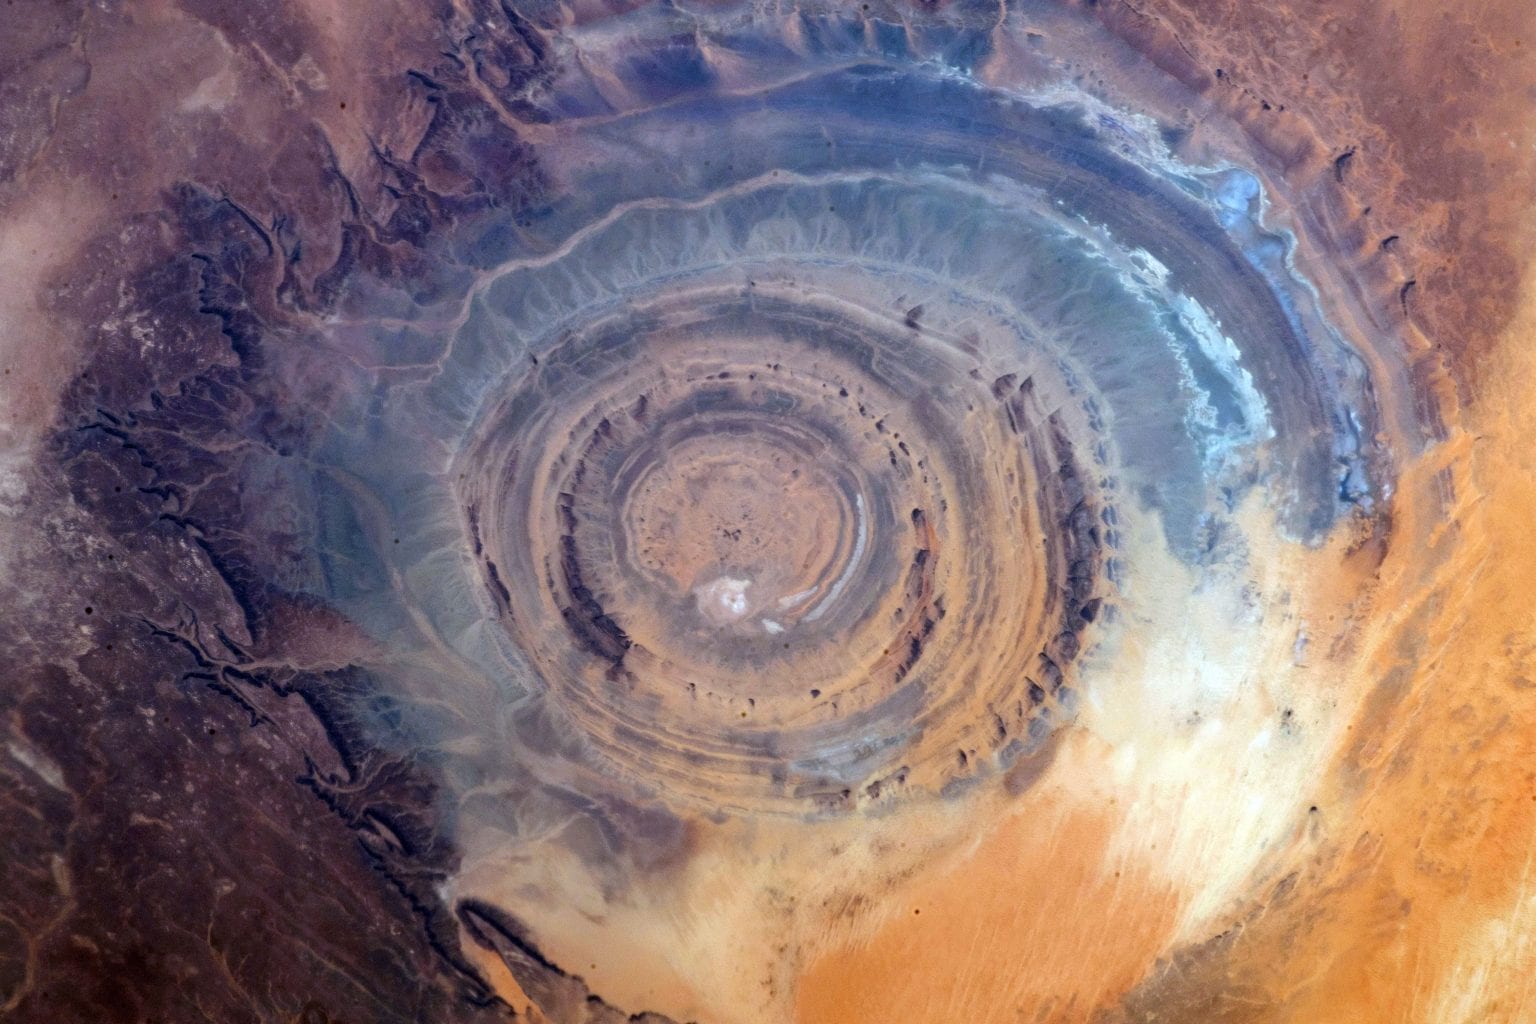 Nog een fascinerend shot van het oog van de Sahara vanuit de ruimte. Krediet: NASA / JPL-Caltech